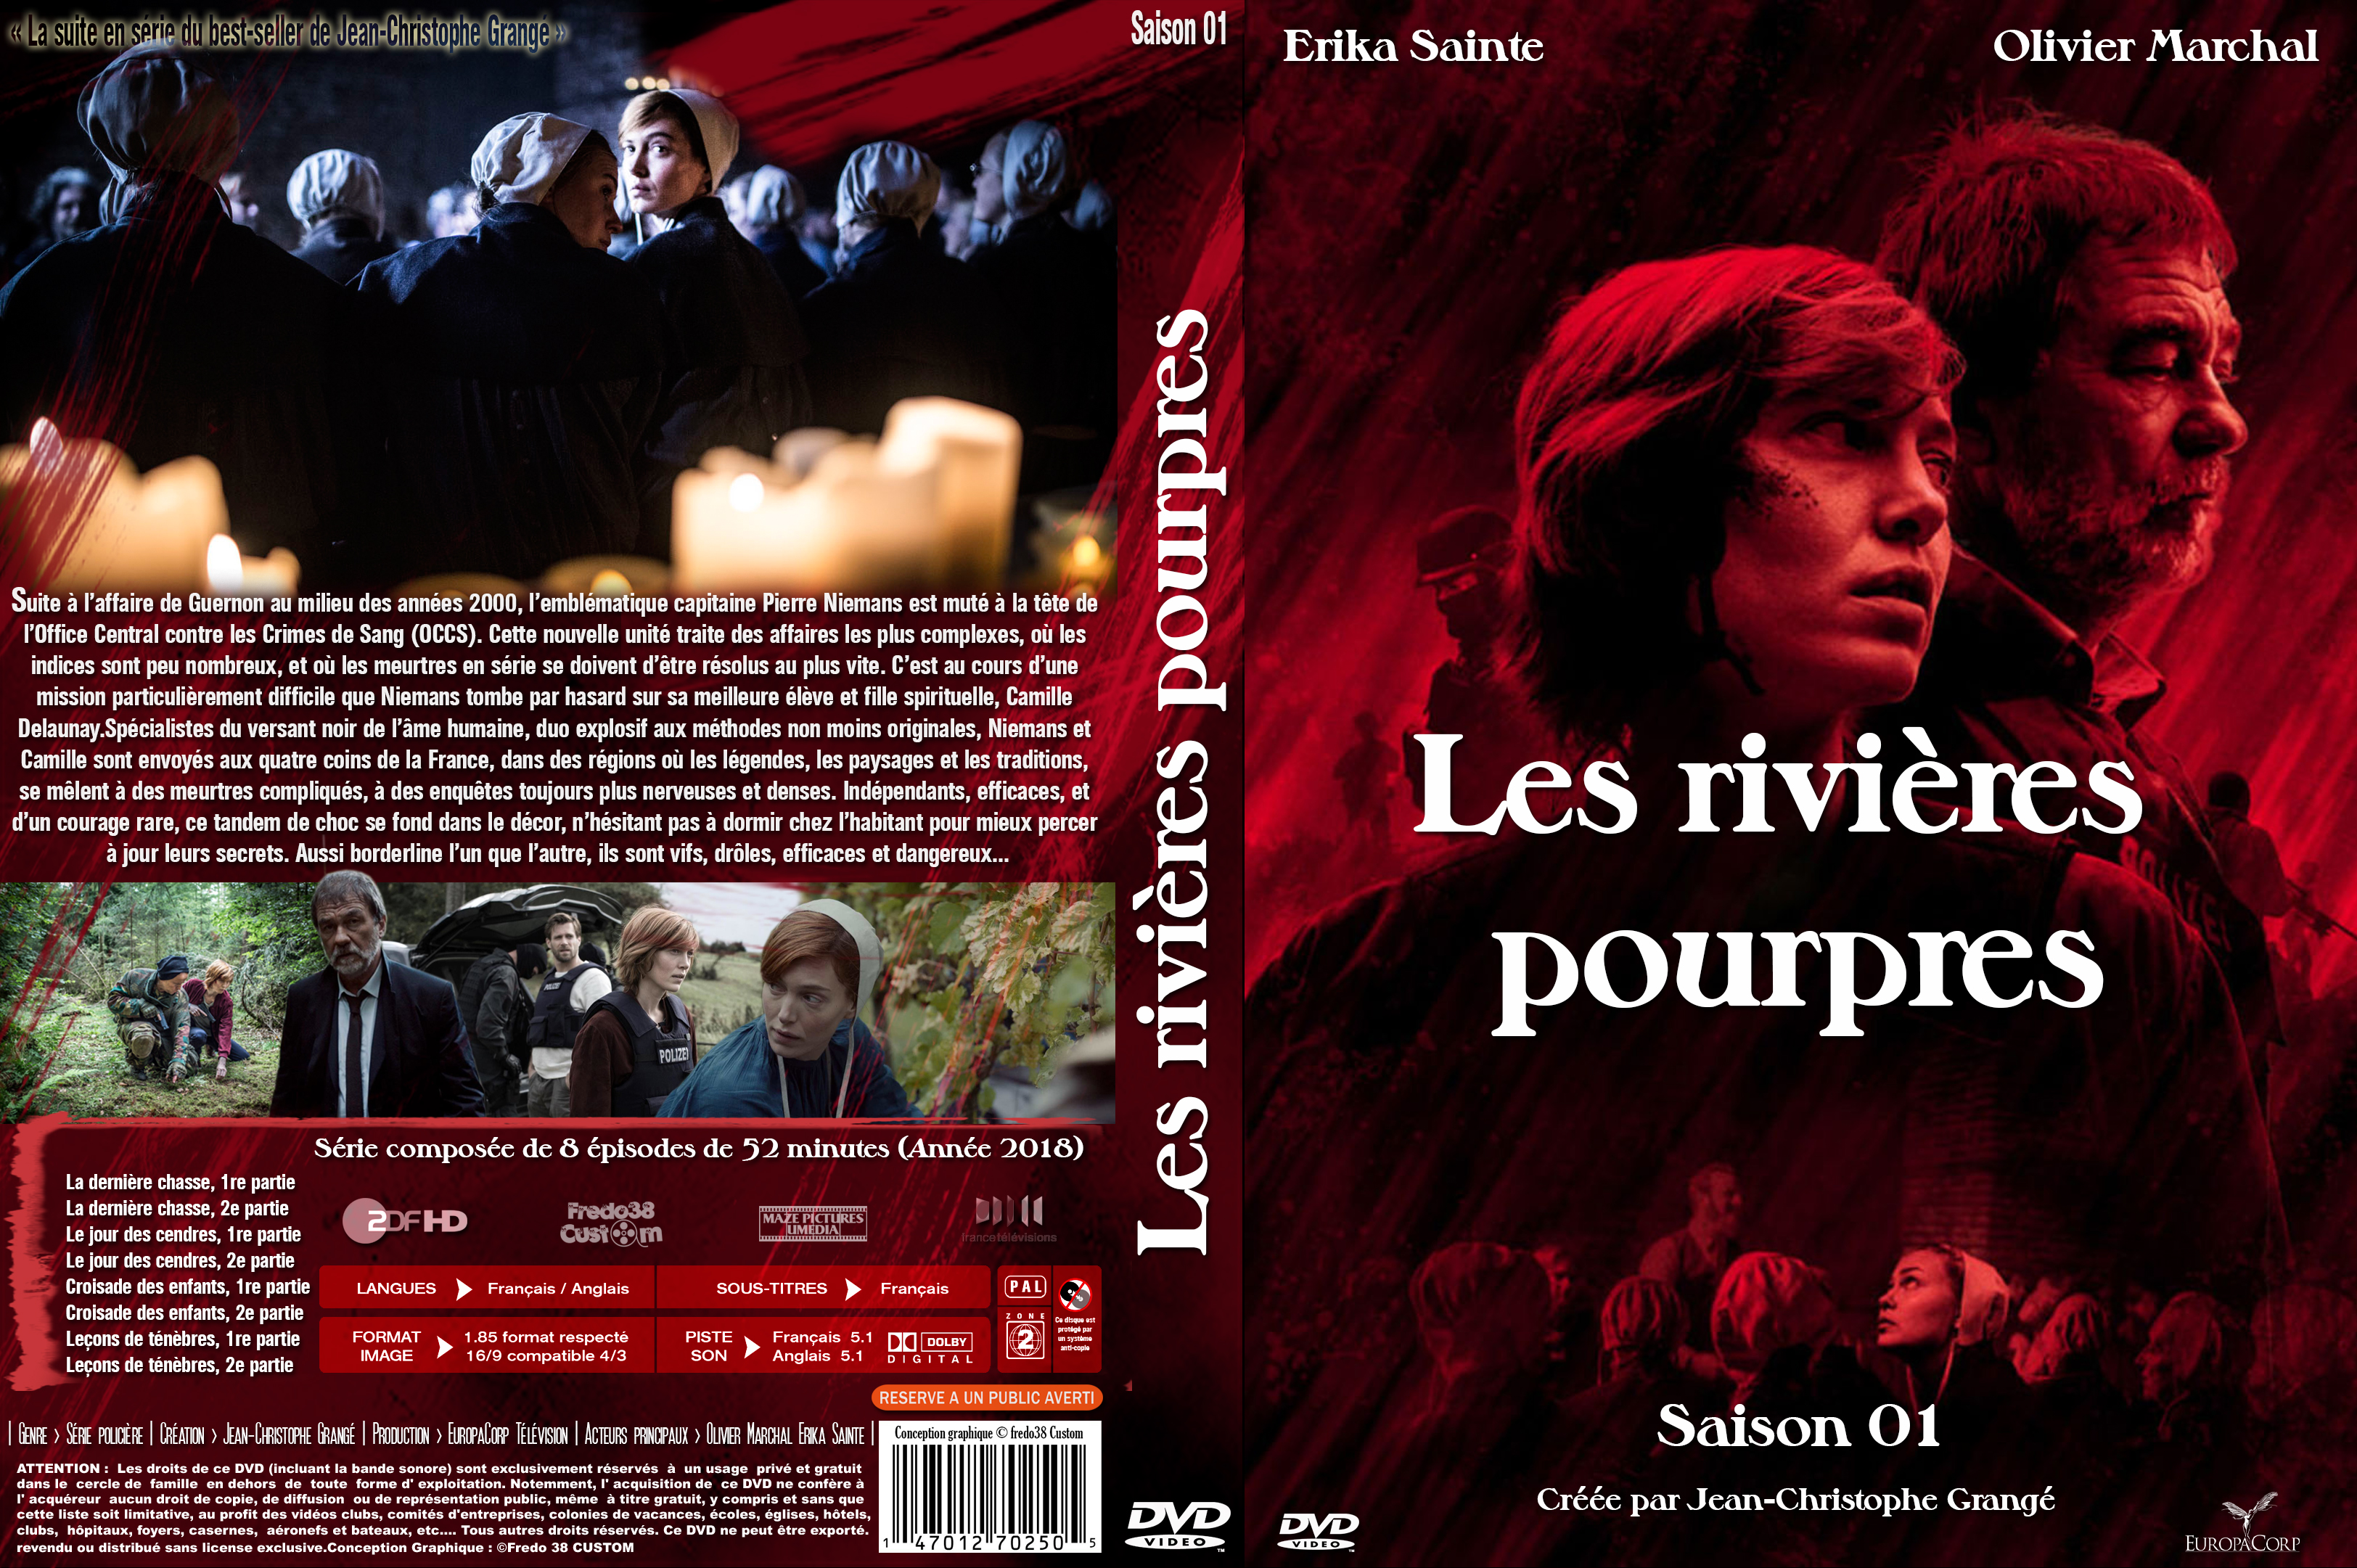 Jaquette DVD Les rivieres pourpres (serie) custom